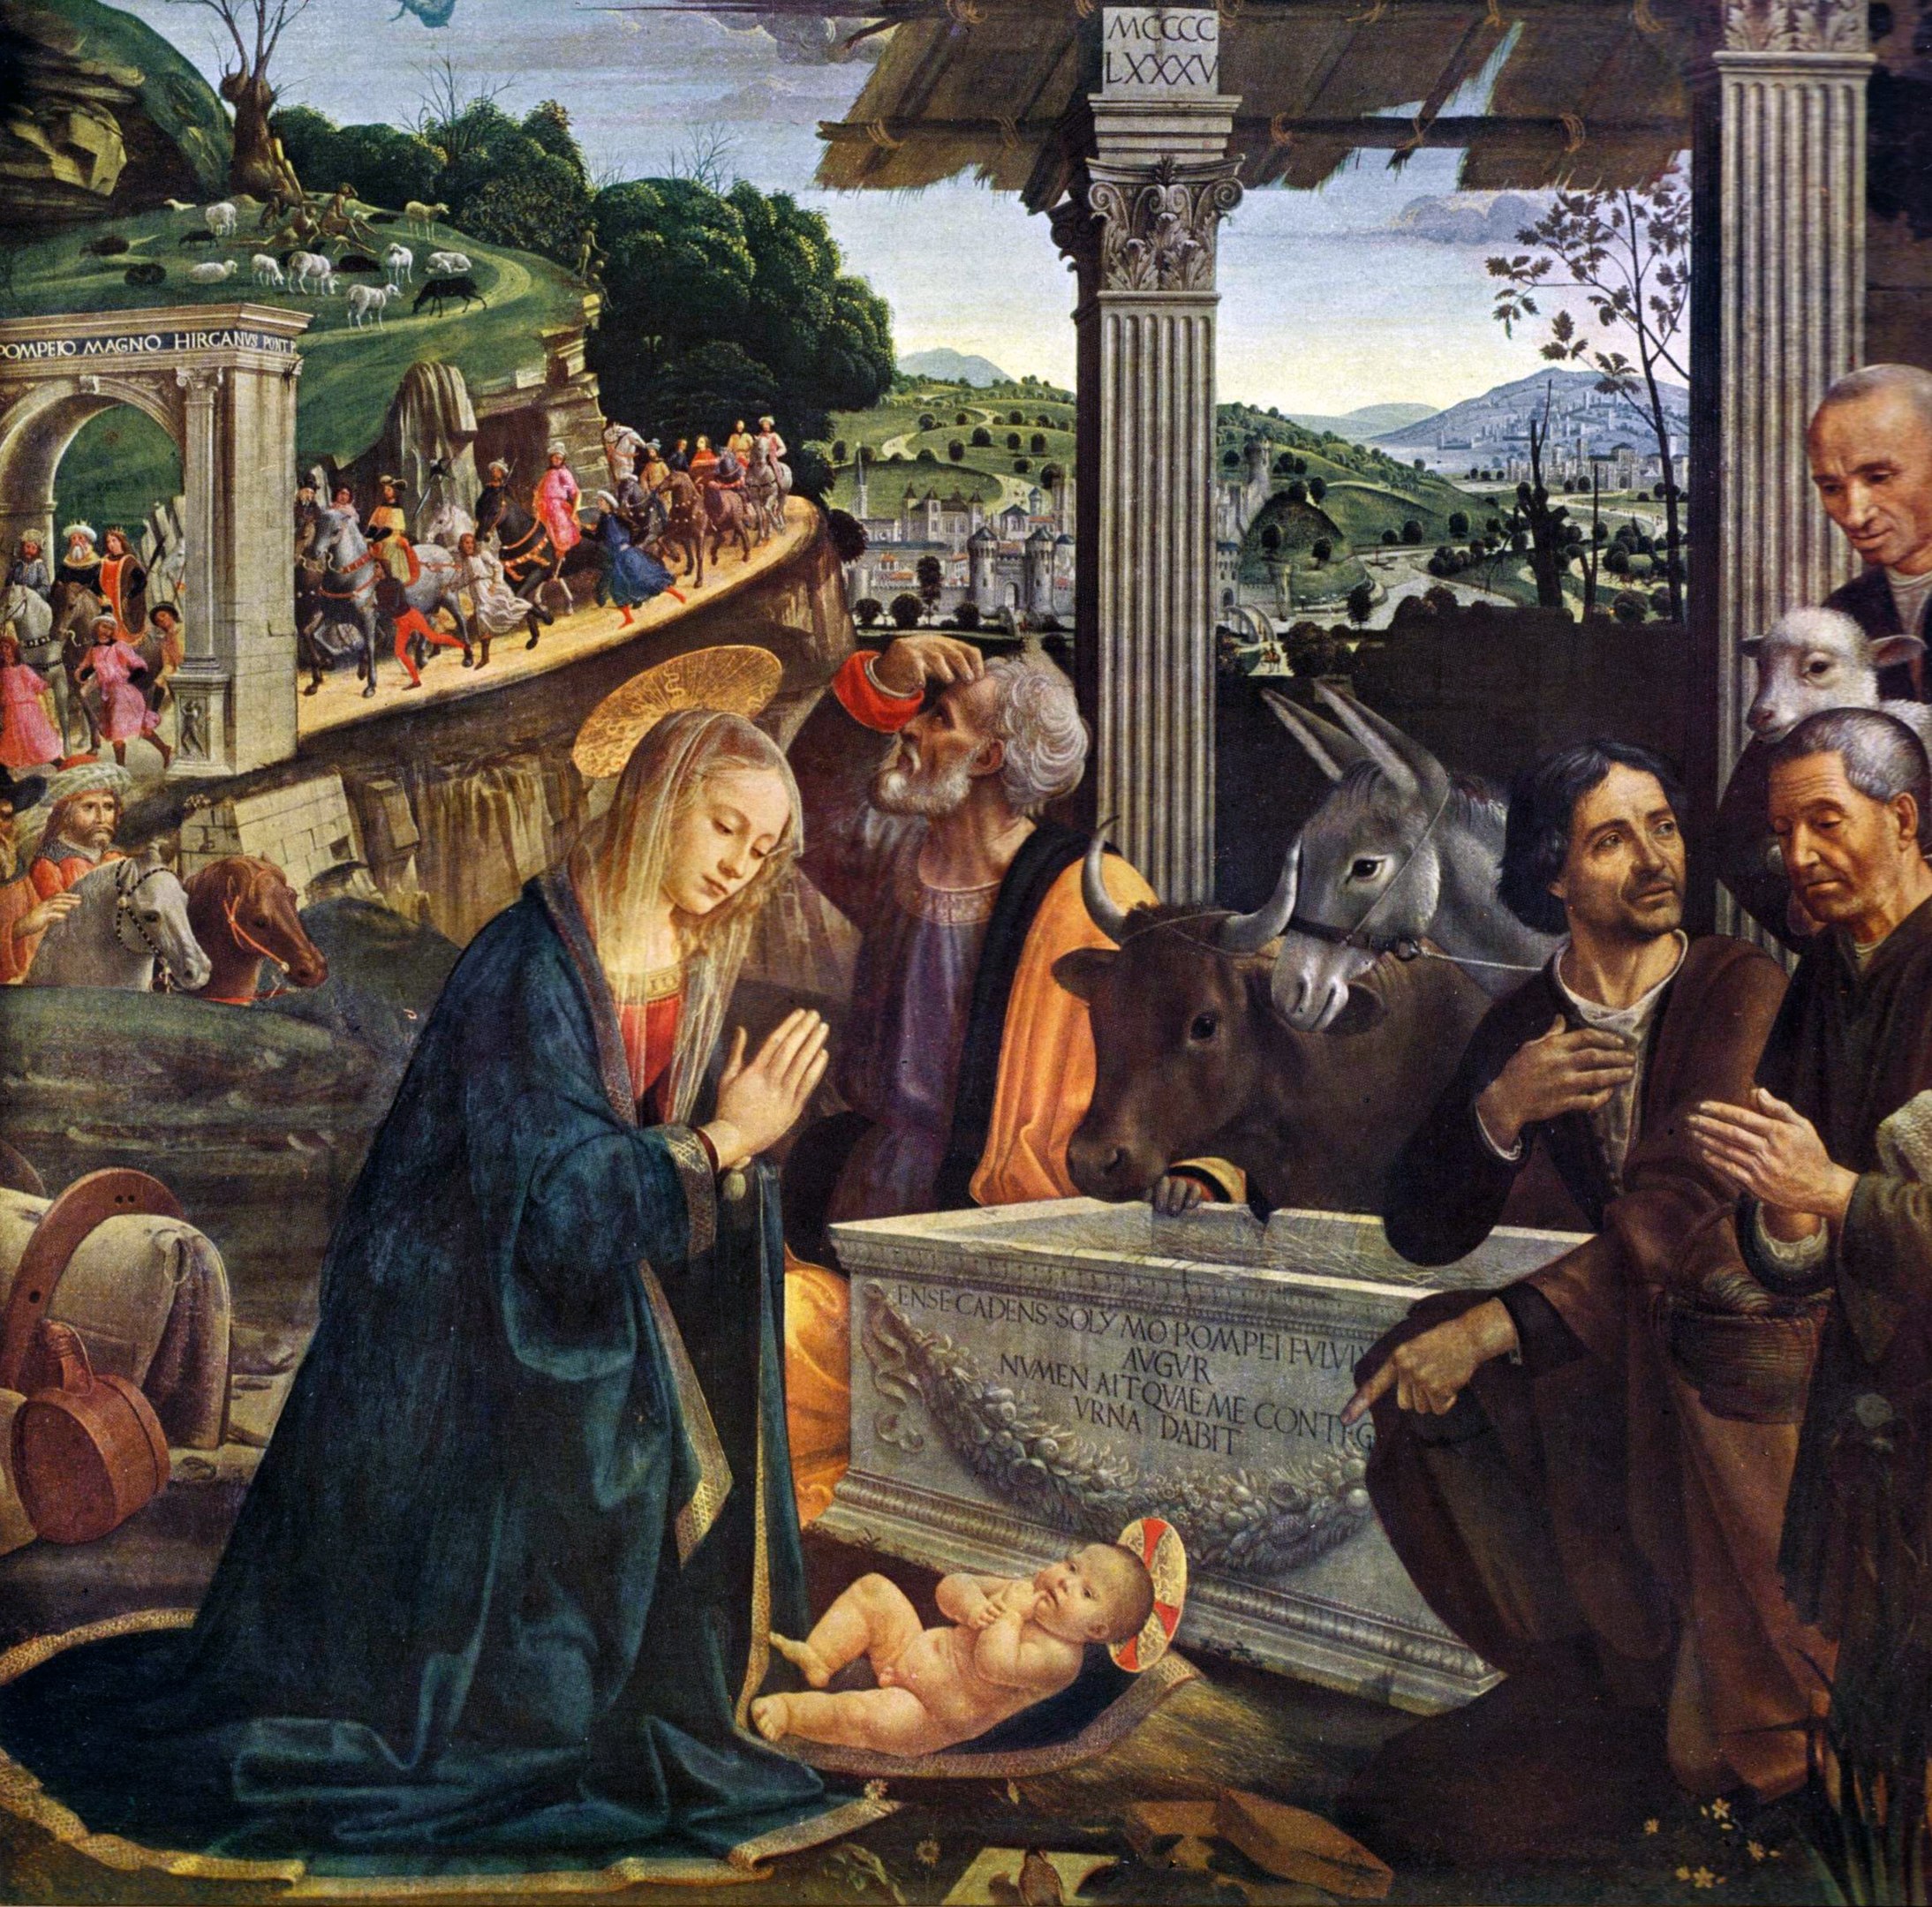 Natività e adorazione dei pastori by Domenico Ghirlandaio - 1483-85 - 167 x 167 cm 